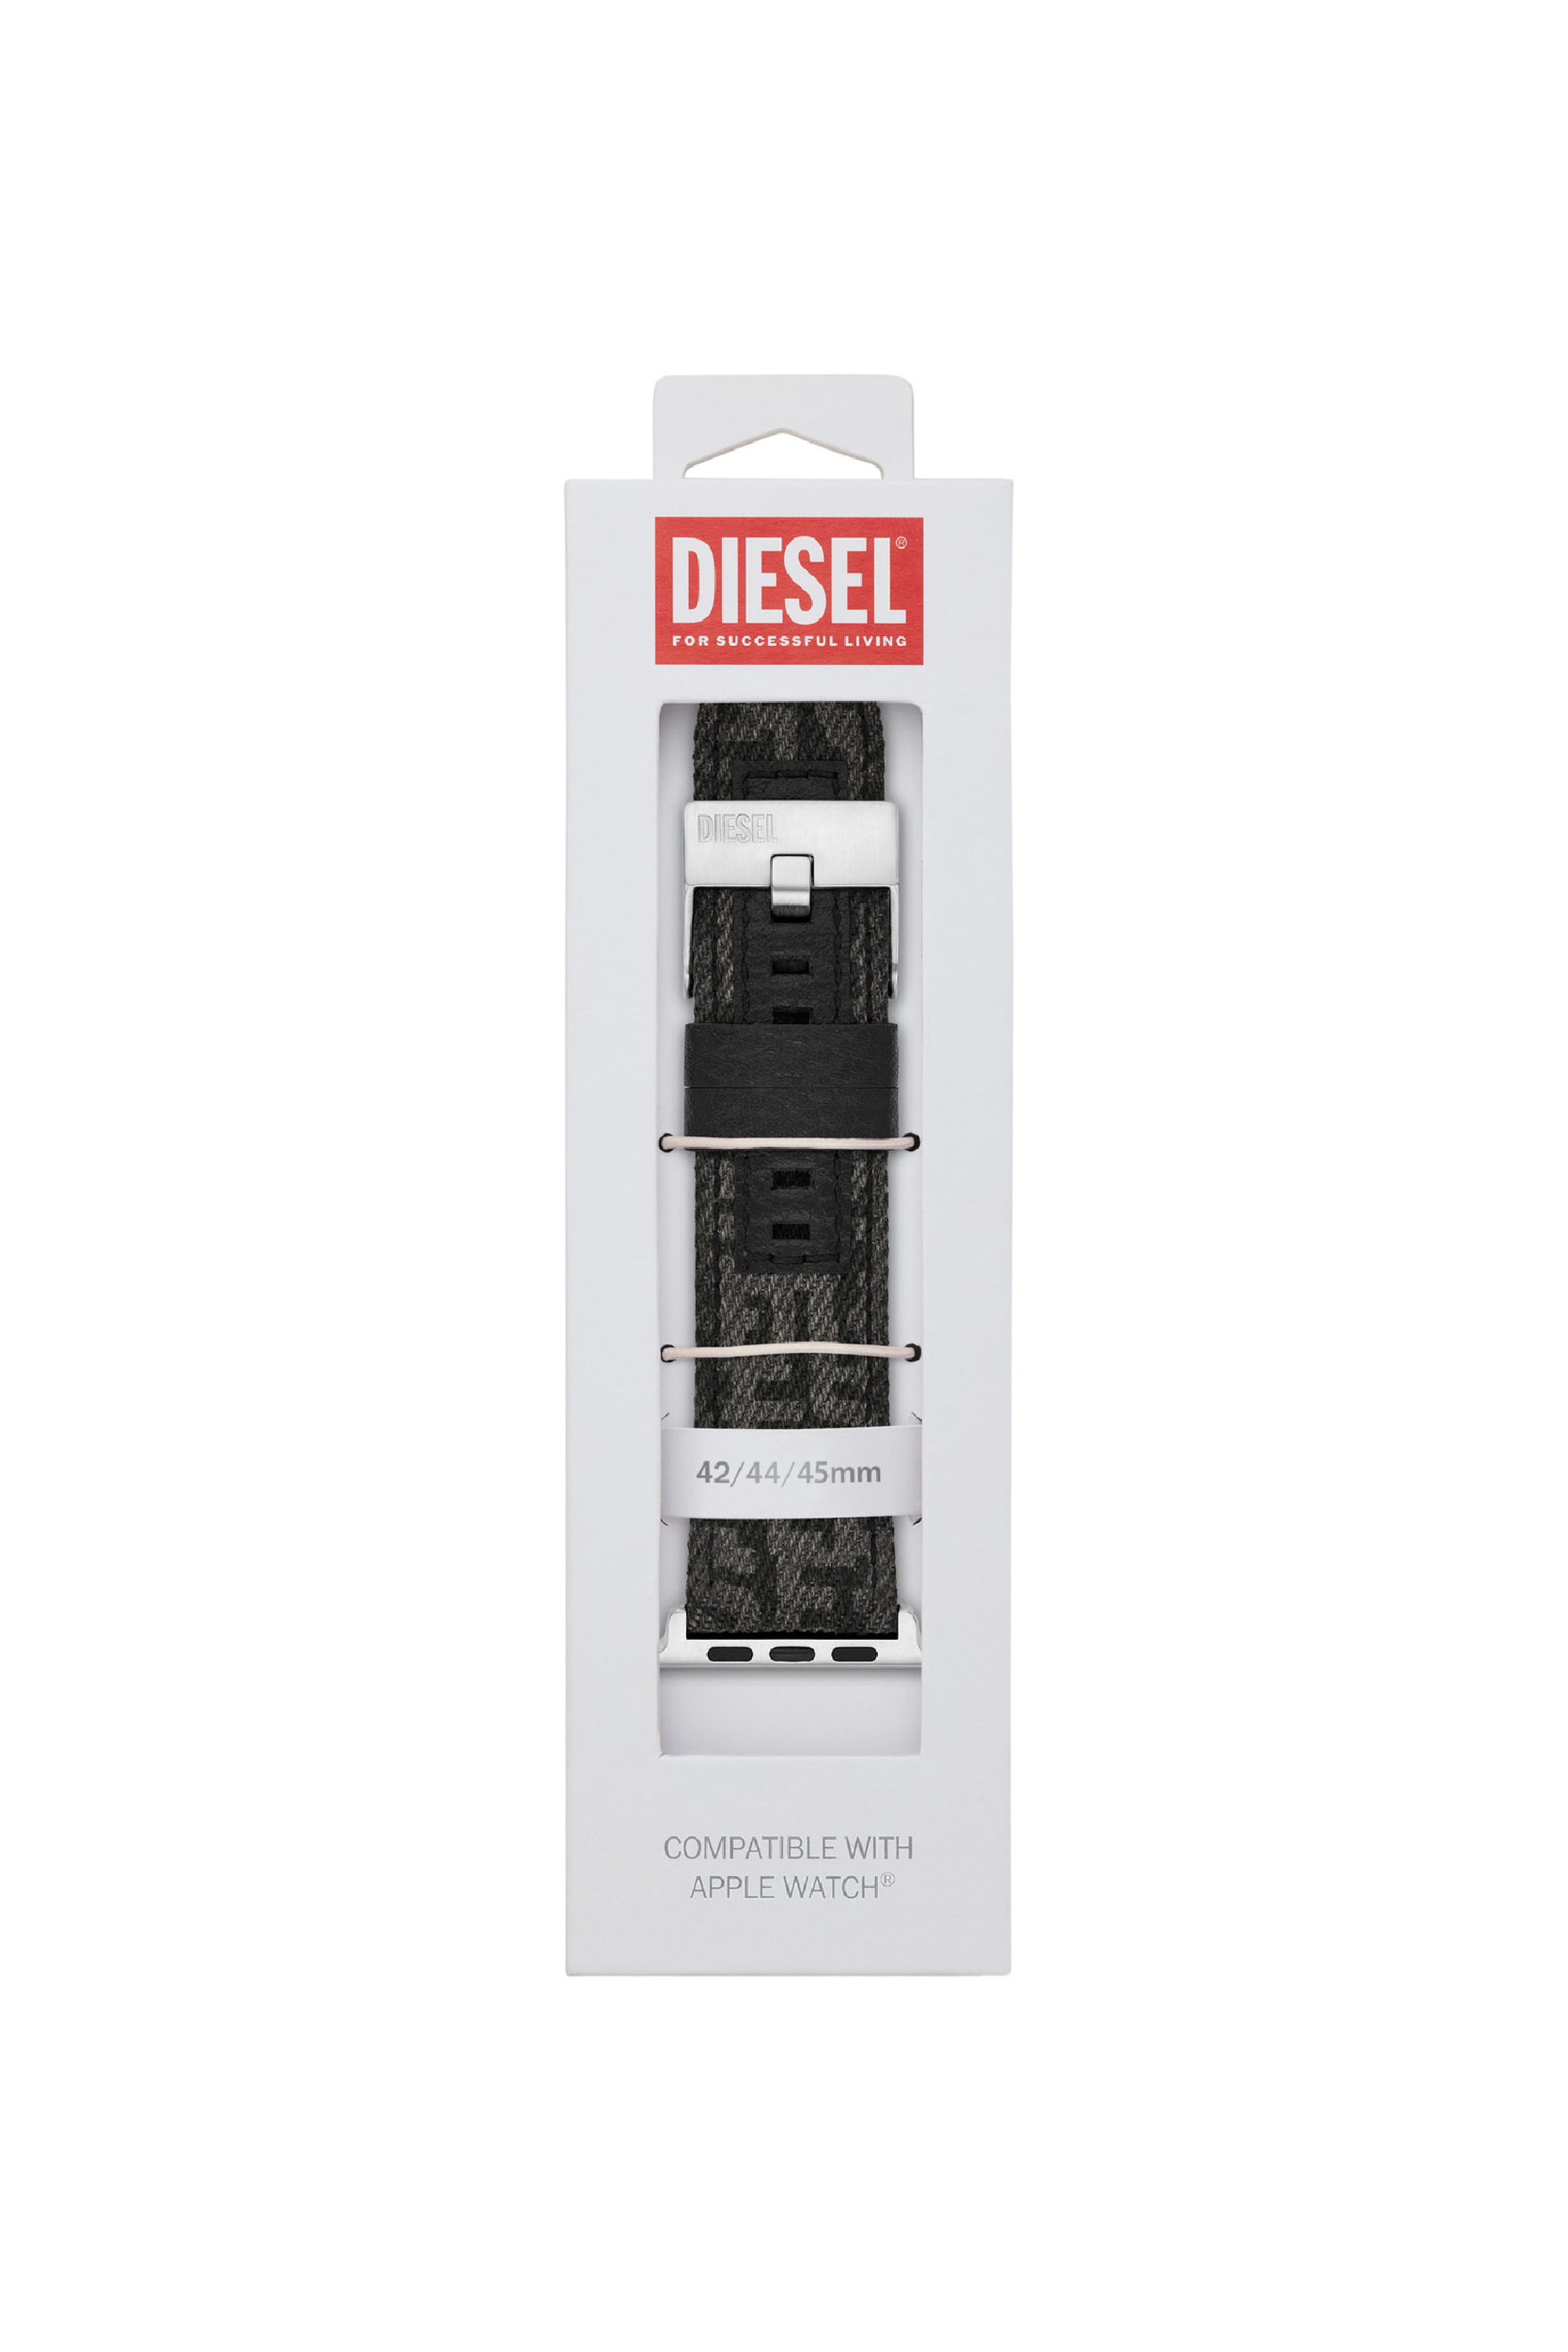 Diesel - DSS0012, Noir - Image 2